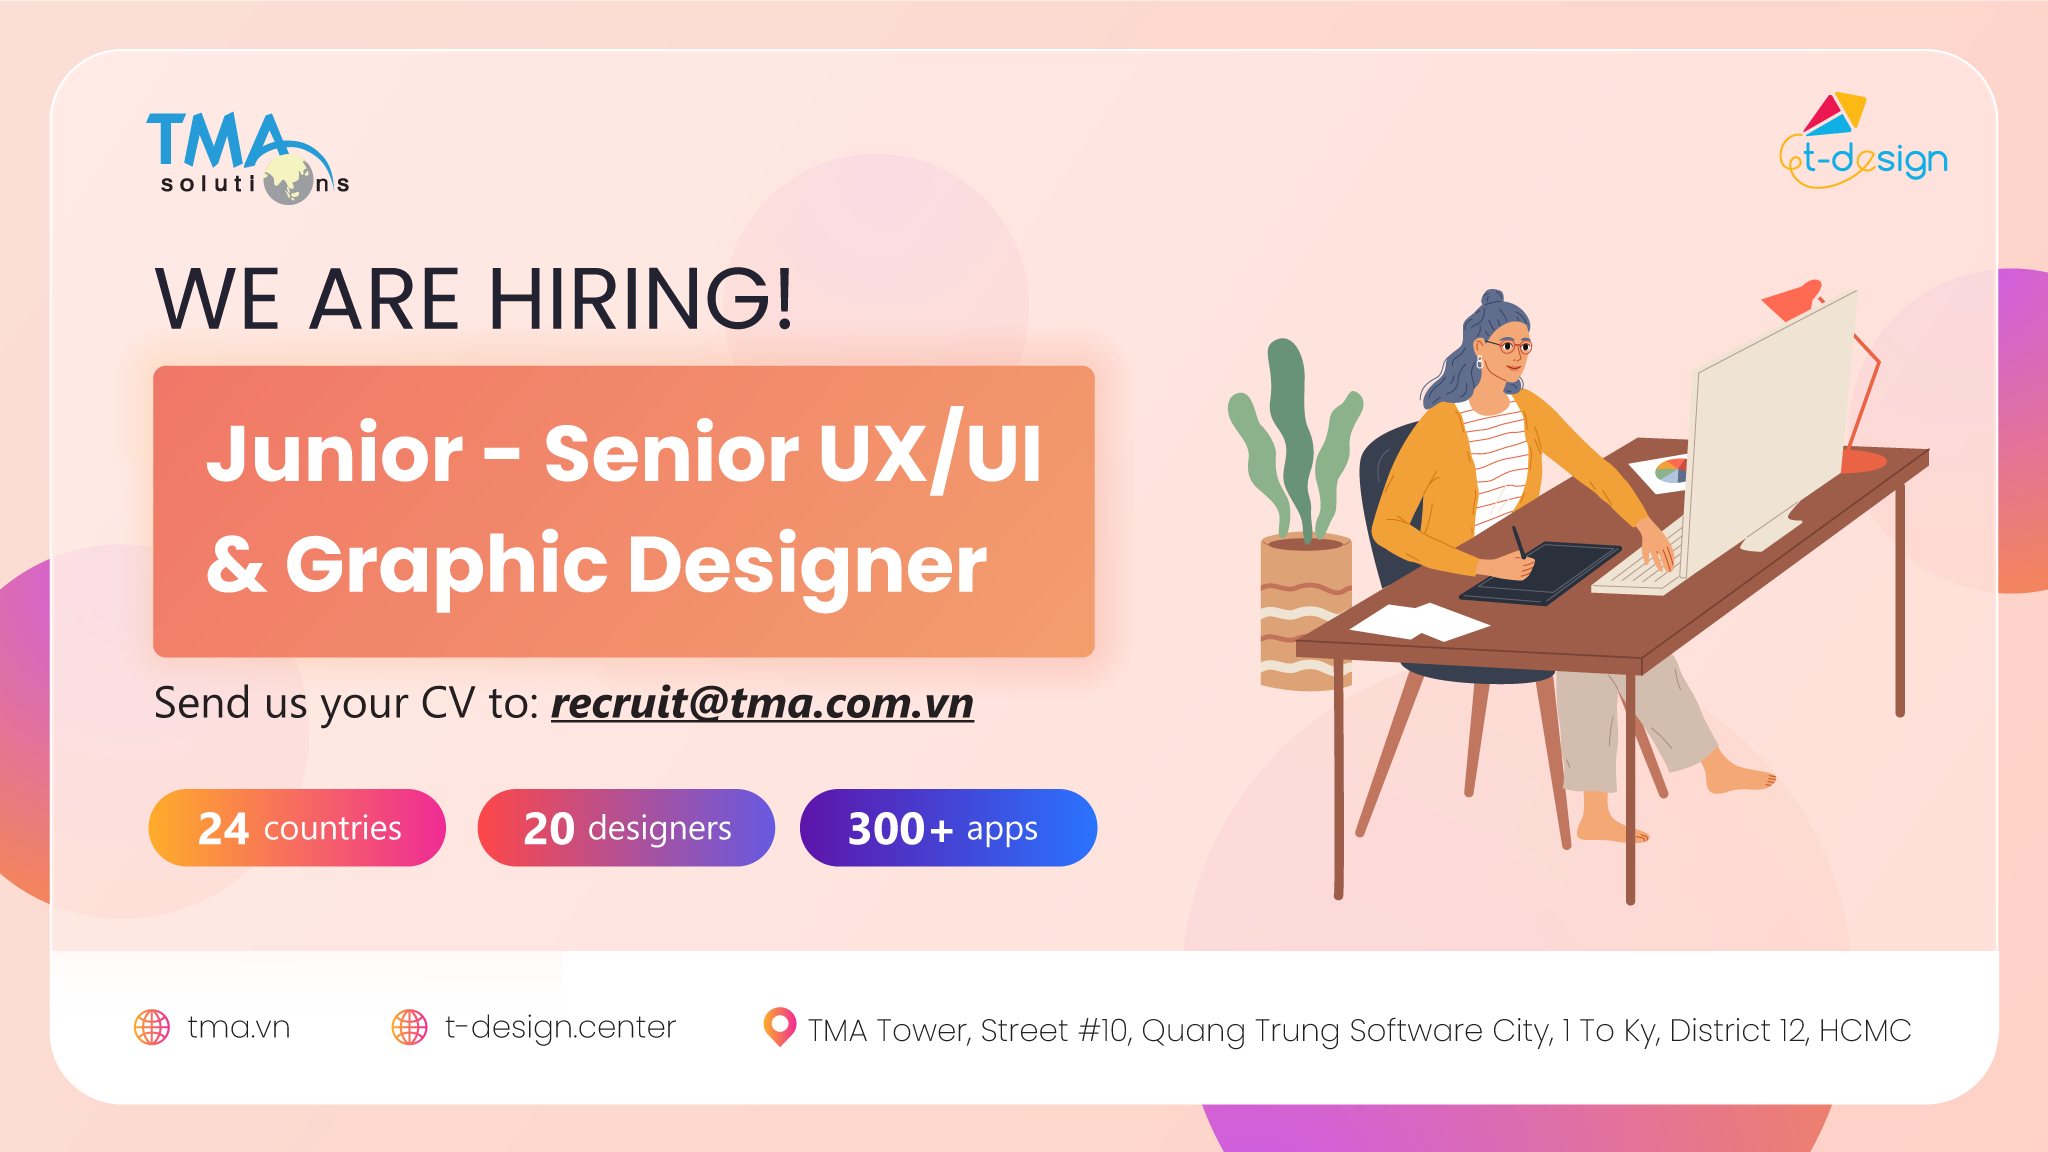 TMA is hiring UX/UI & Graphic Designer